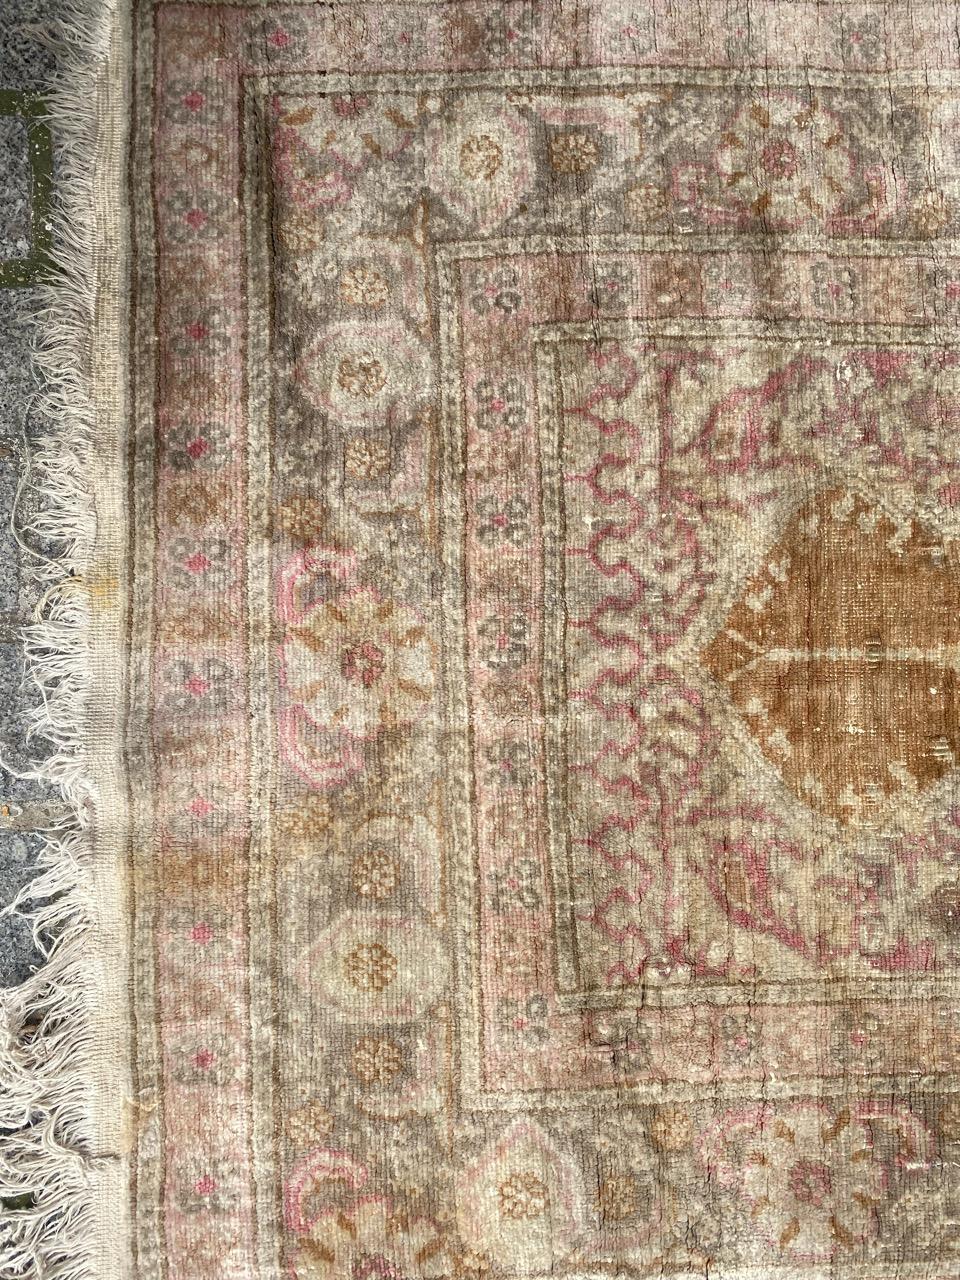 Hübscher türkischer Seidenteppich aus der Mitte des Jahrhunderts aus Kayseri, mit schönem Mihrab-Muster und schönen hellen und verblassten Farben, vollständig handgeknüpft mit Seidensamt auf Baumwollbasis.

✨✨✨
